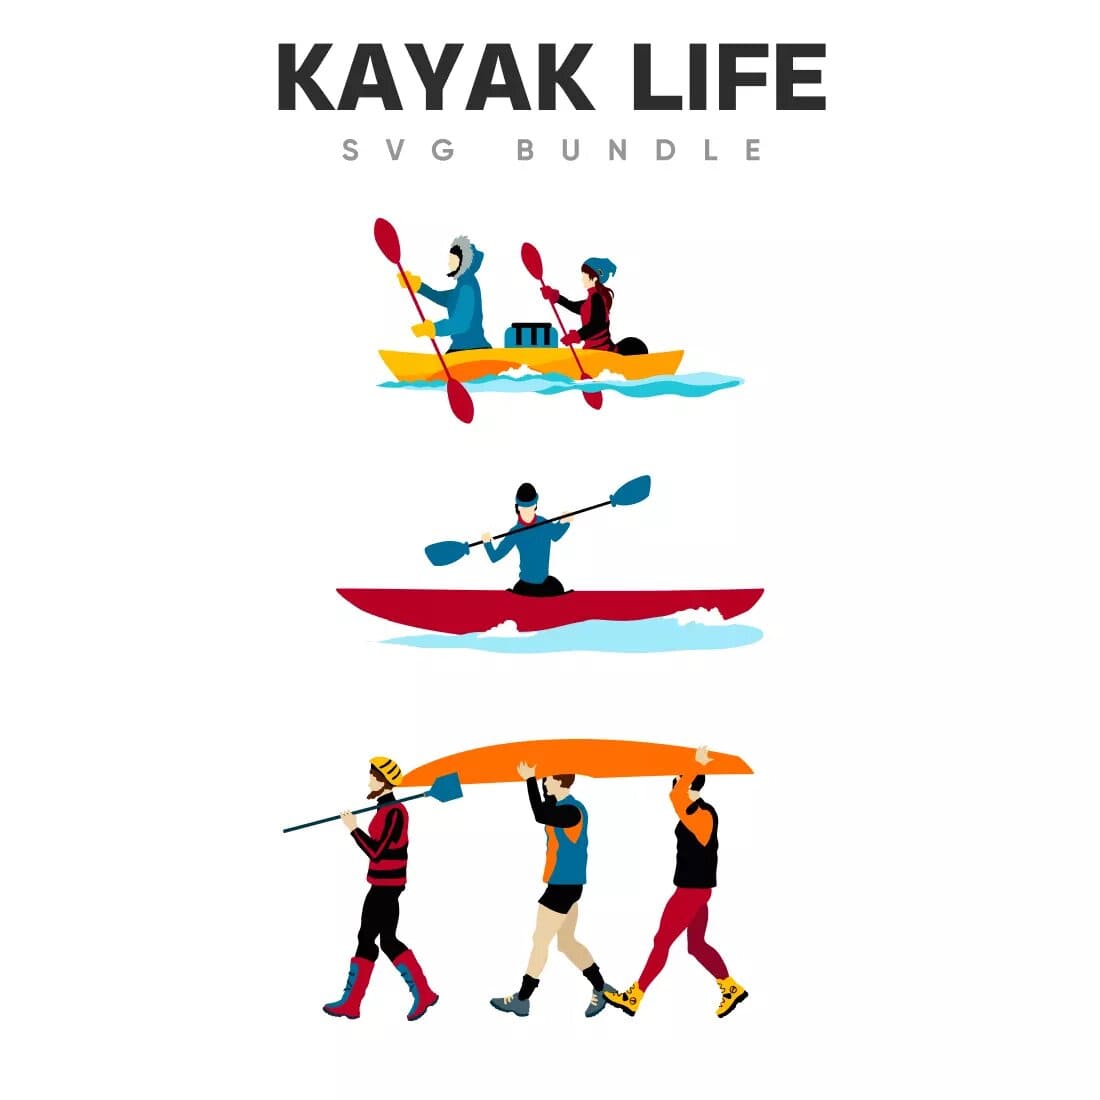 Kayak Life SVG Bundle Preview 4.